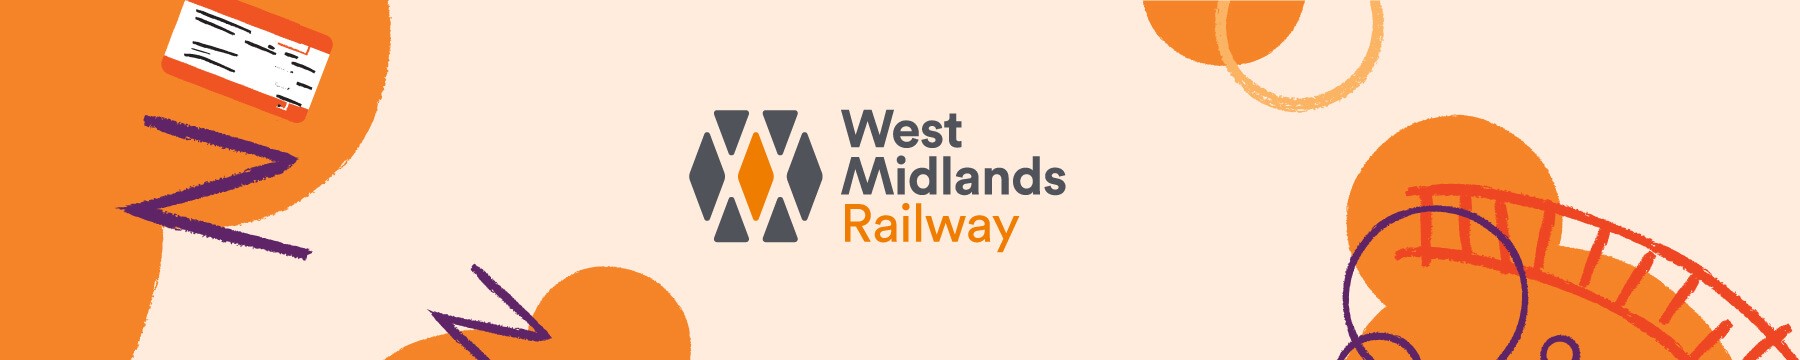 west midlands railway inner banner logo